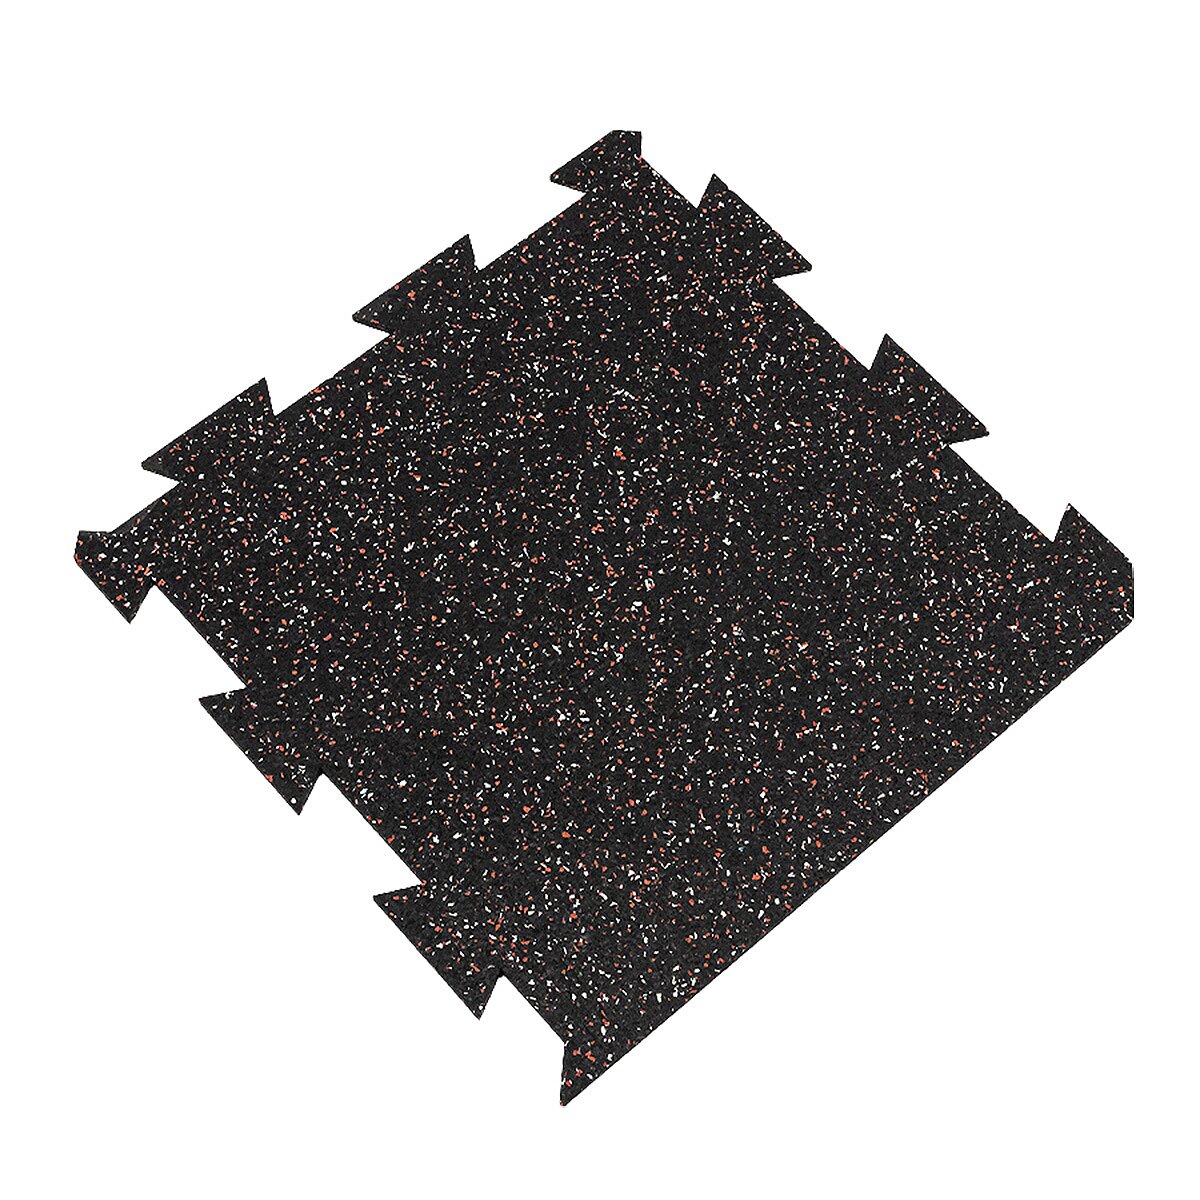 Čierno-bielo-červená gumová modulová puzzle dlažba (okraj) FLOMA FitFlo SF1050 - dĺžka 50 cm, šírka 50 cm a výška 0,8 cm